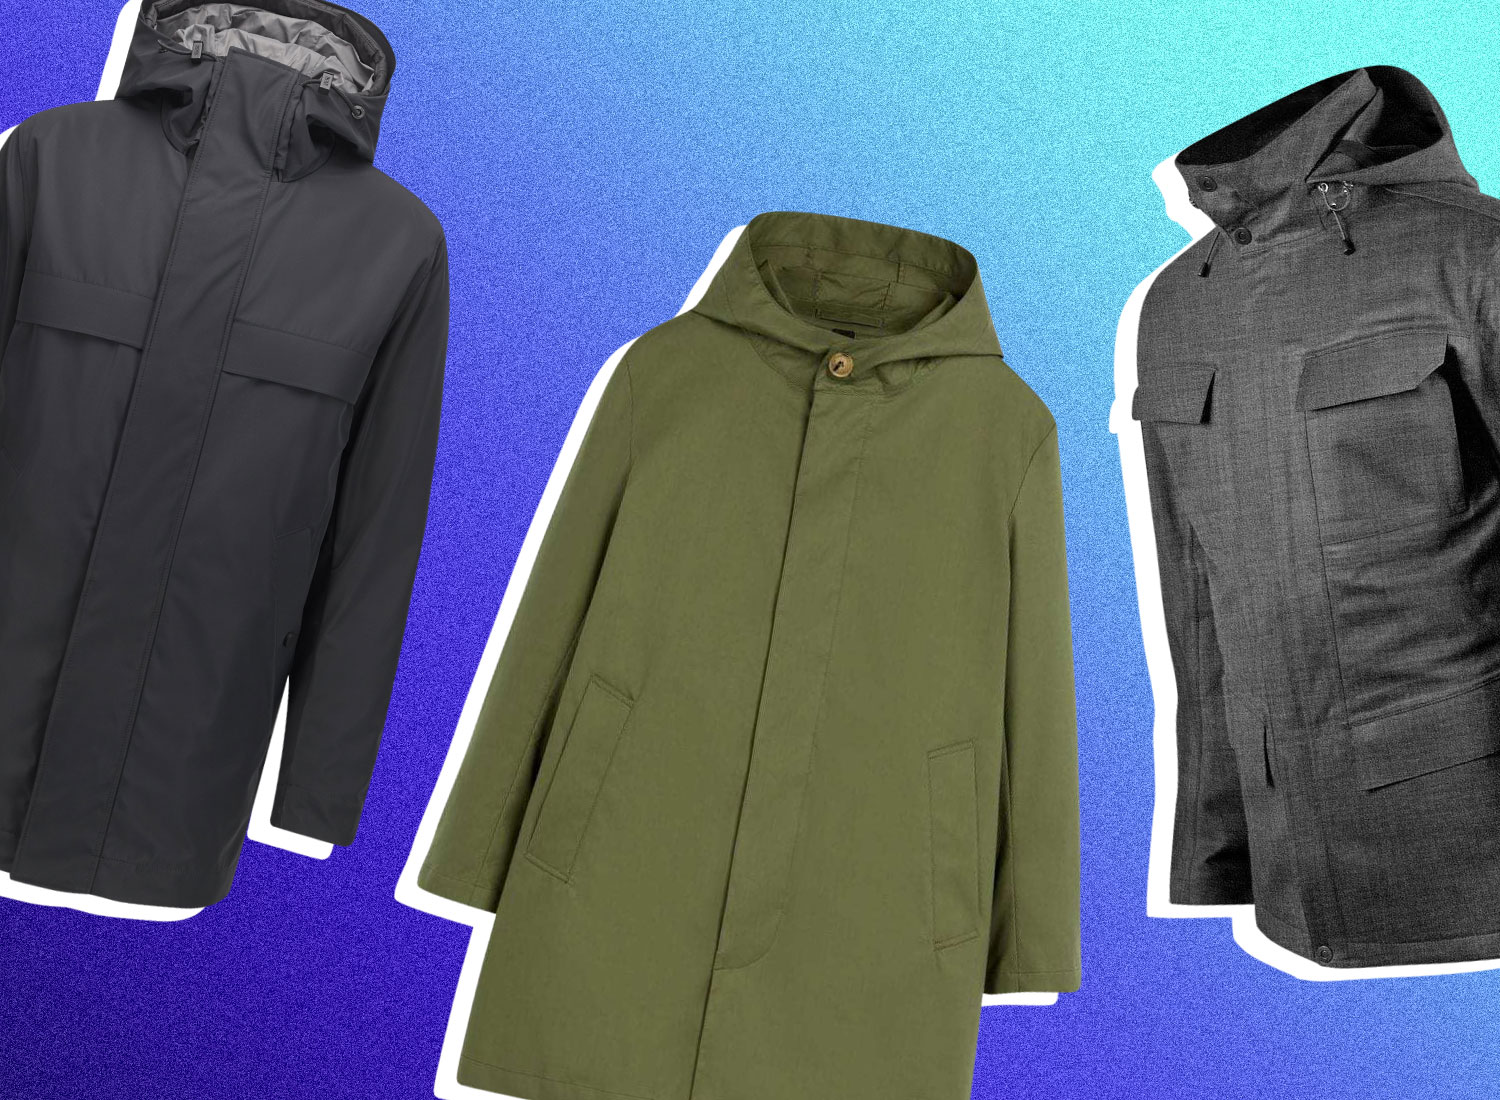 15 Best Men’s Winter Coats To Keep Warm In 2023